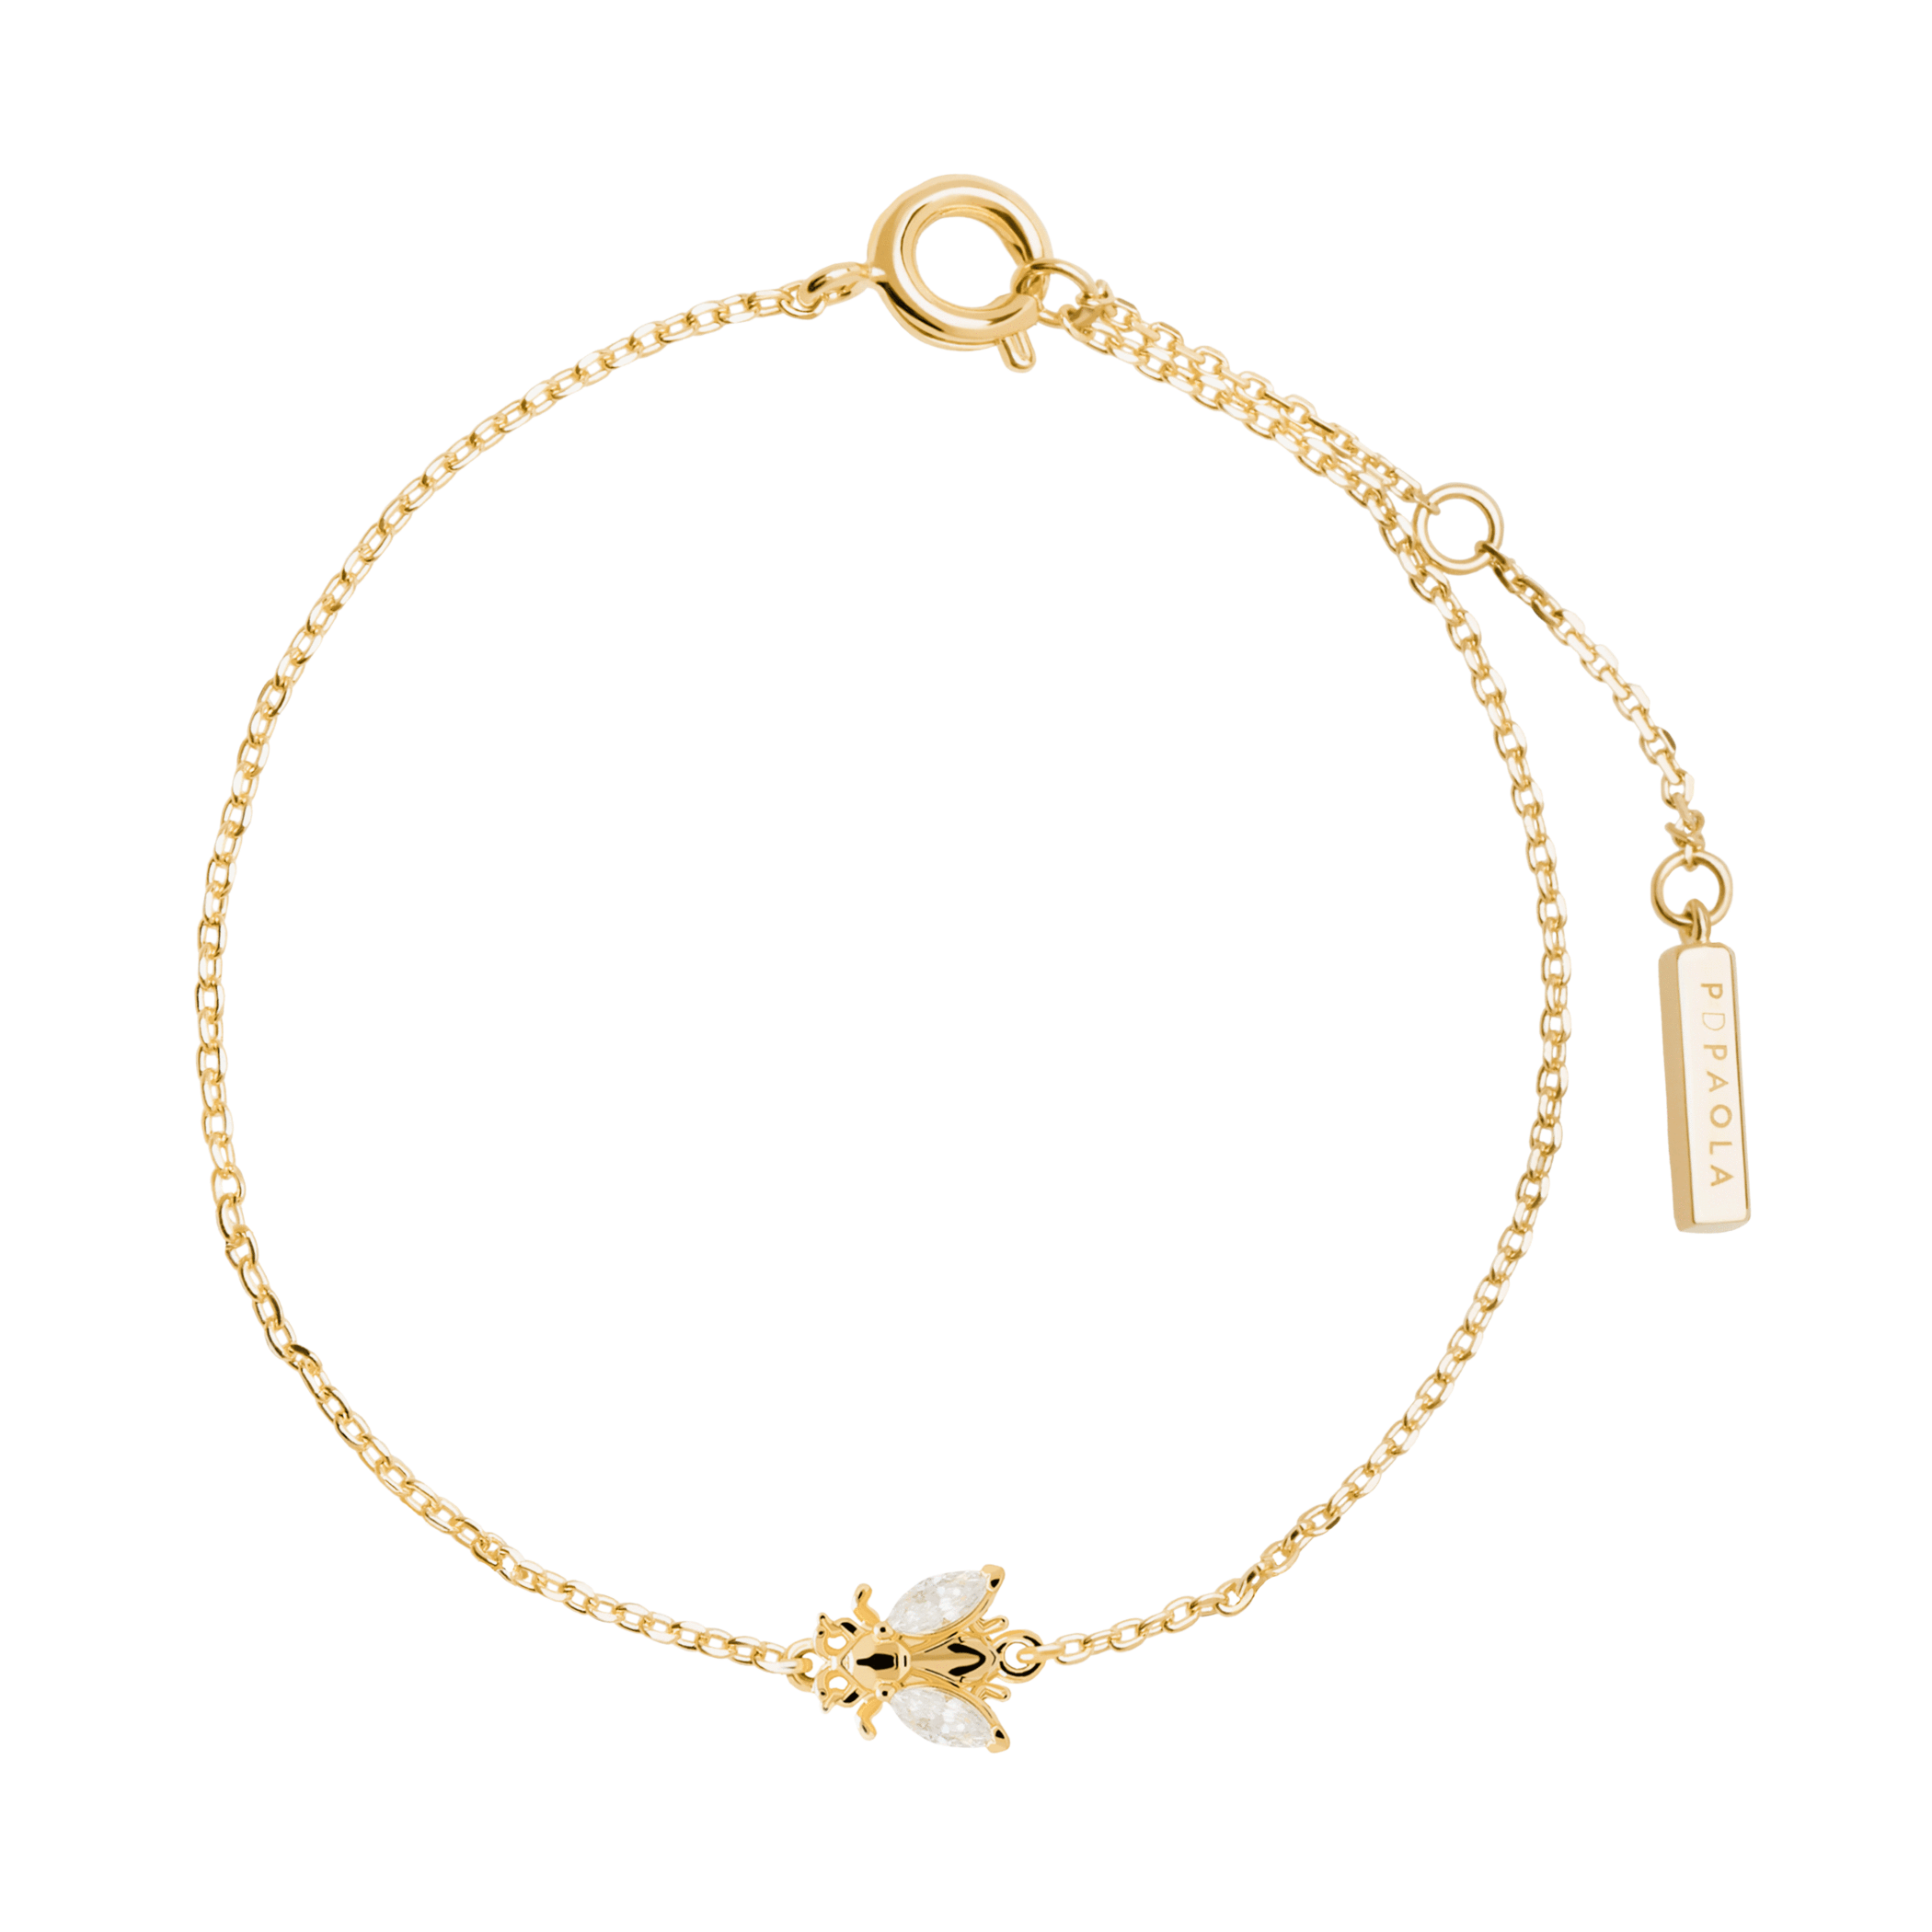 PDPAOLA - Buzz gold bracelet (zaza collection) PU01-122-U